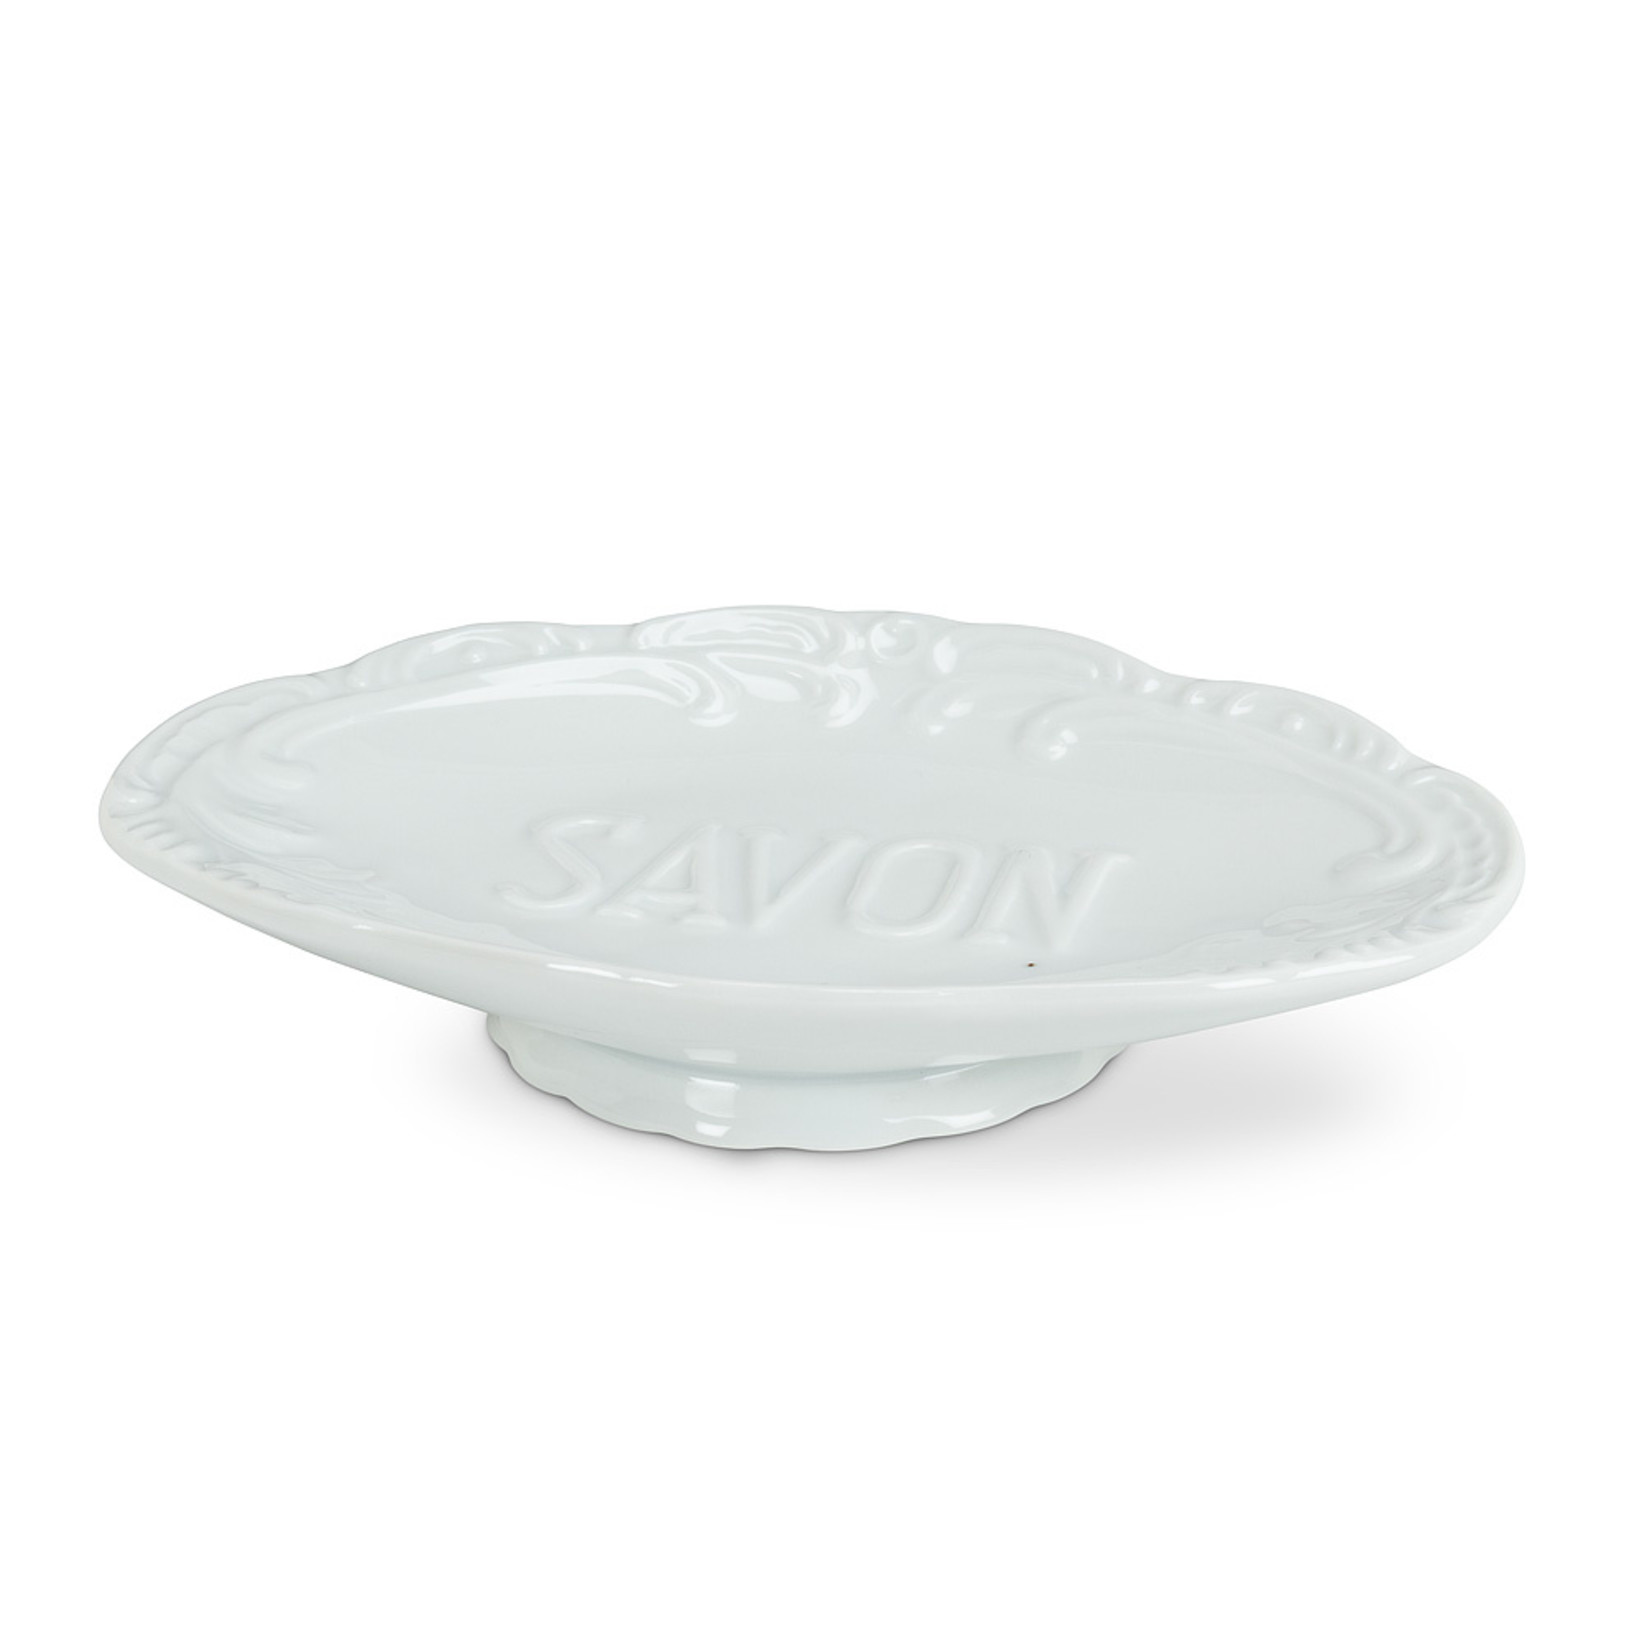 Abbott Savon Soap Dish